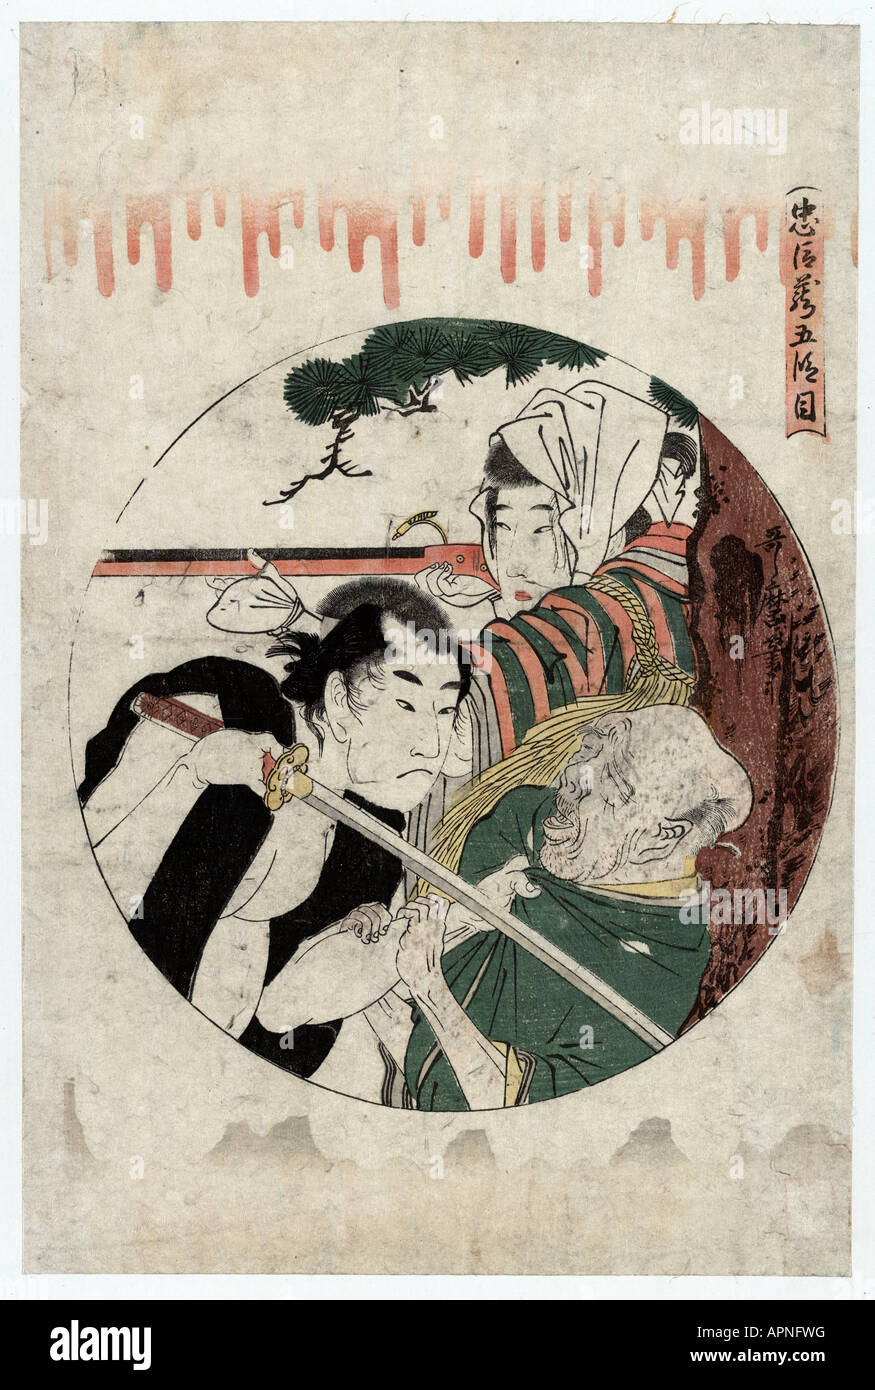 Godanme, Giappone tra il 1799 e il 1801 Foto Stock